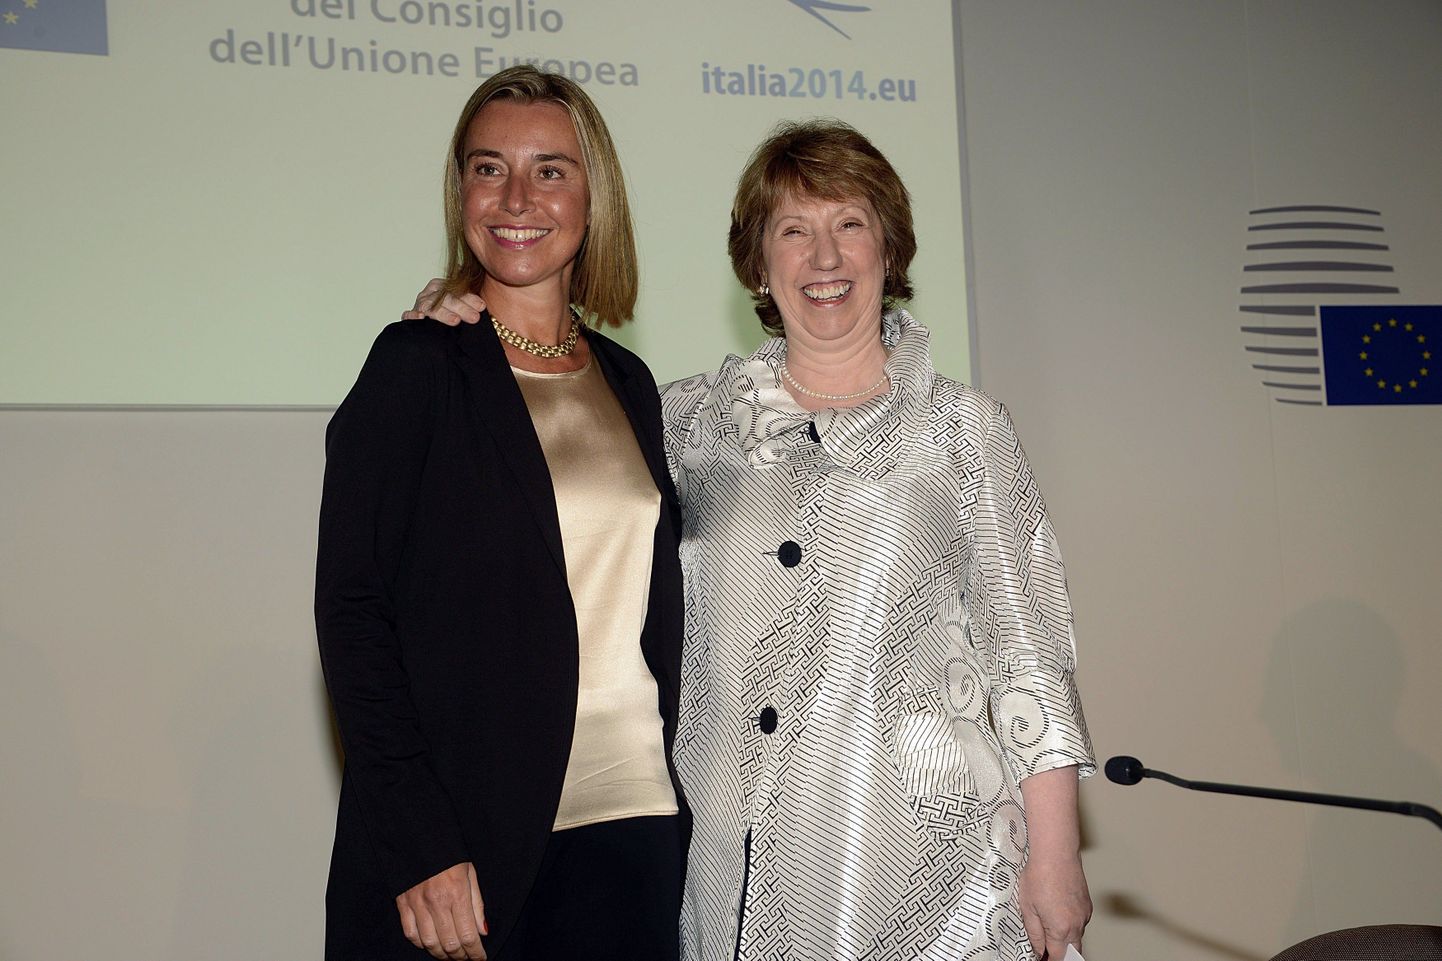 Itaalia välisminister Federica Mogherini (vasakul) koos Euroopa Liidu välispoliitikajuhi Catherine Ashtoniga täna Milanos.